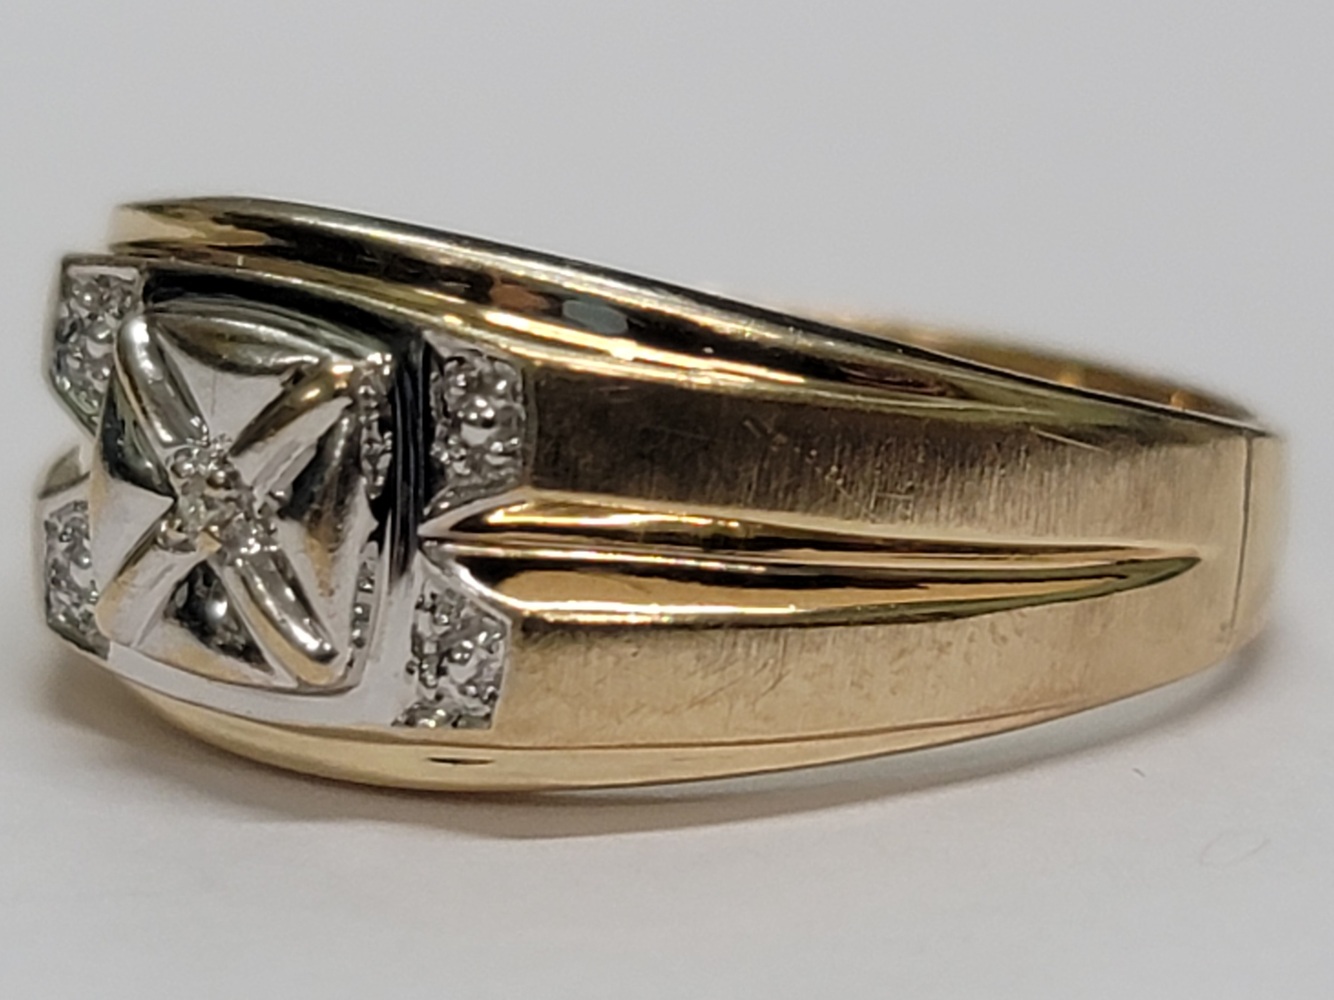 10 Karat Two Tone Gold Band Ring - Size: 12.75